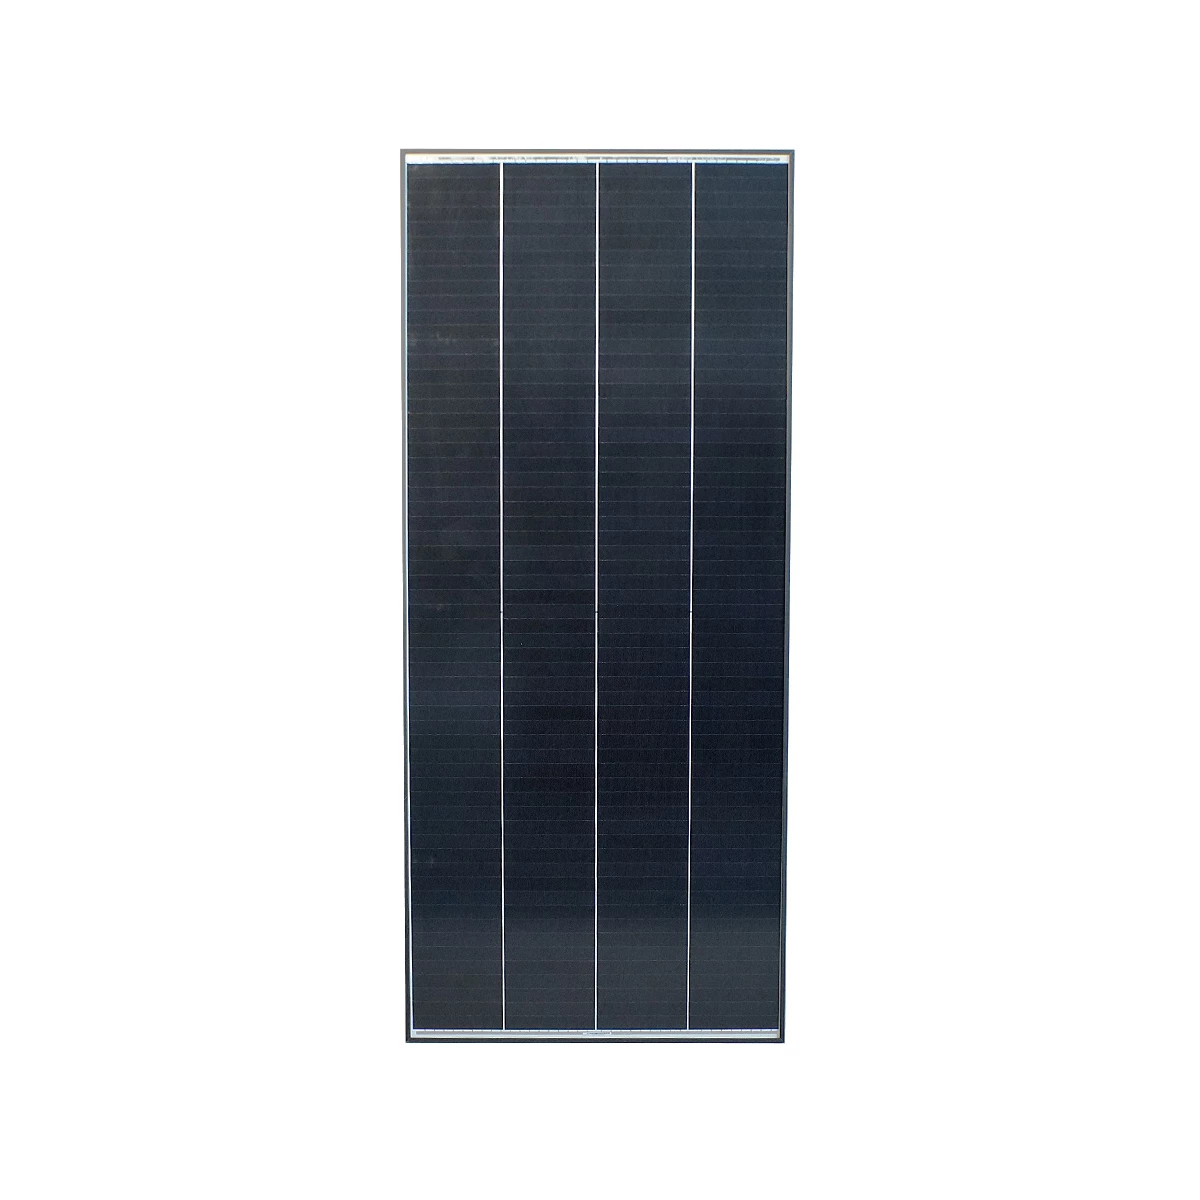 250W BLACK LINE MPPT Wohnmobil Solaranlage mit Schindel Zellen BLS250,  689,00 €